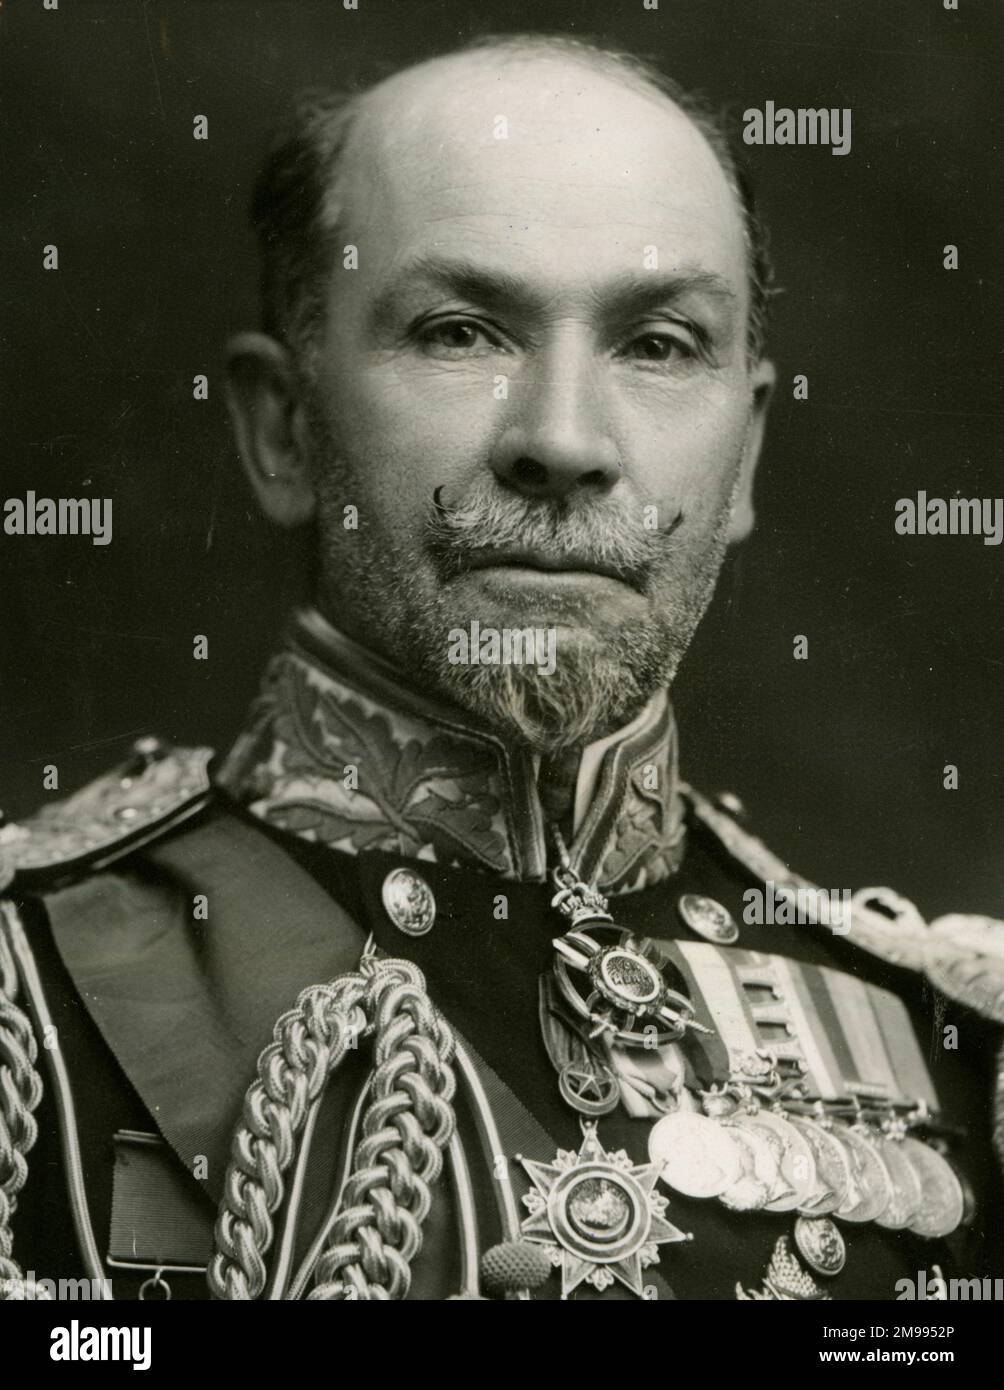 Der ehrenwerte Sir Edward Hobart Seymour, GCB, OM, GCVO, PC, Admiral der Flotte, britische Royal Navy. Stockfoto